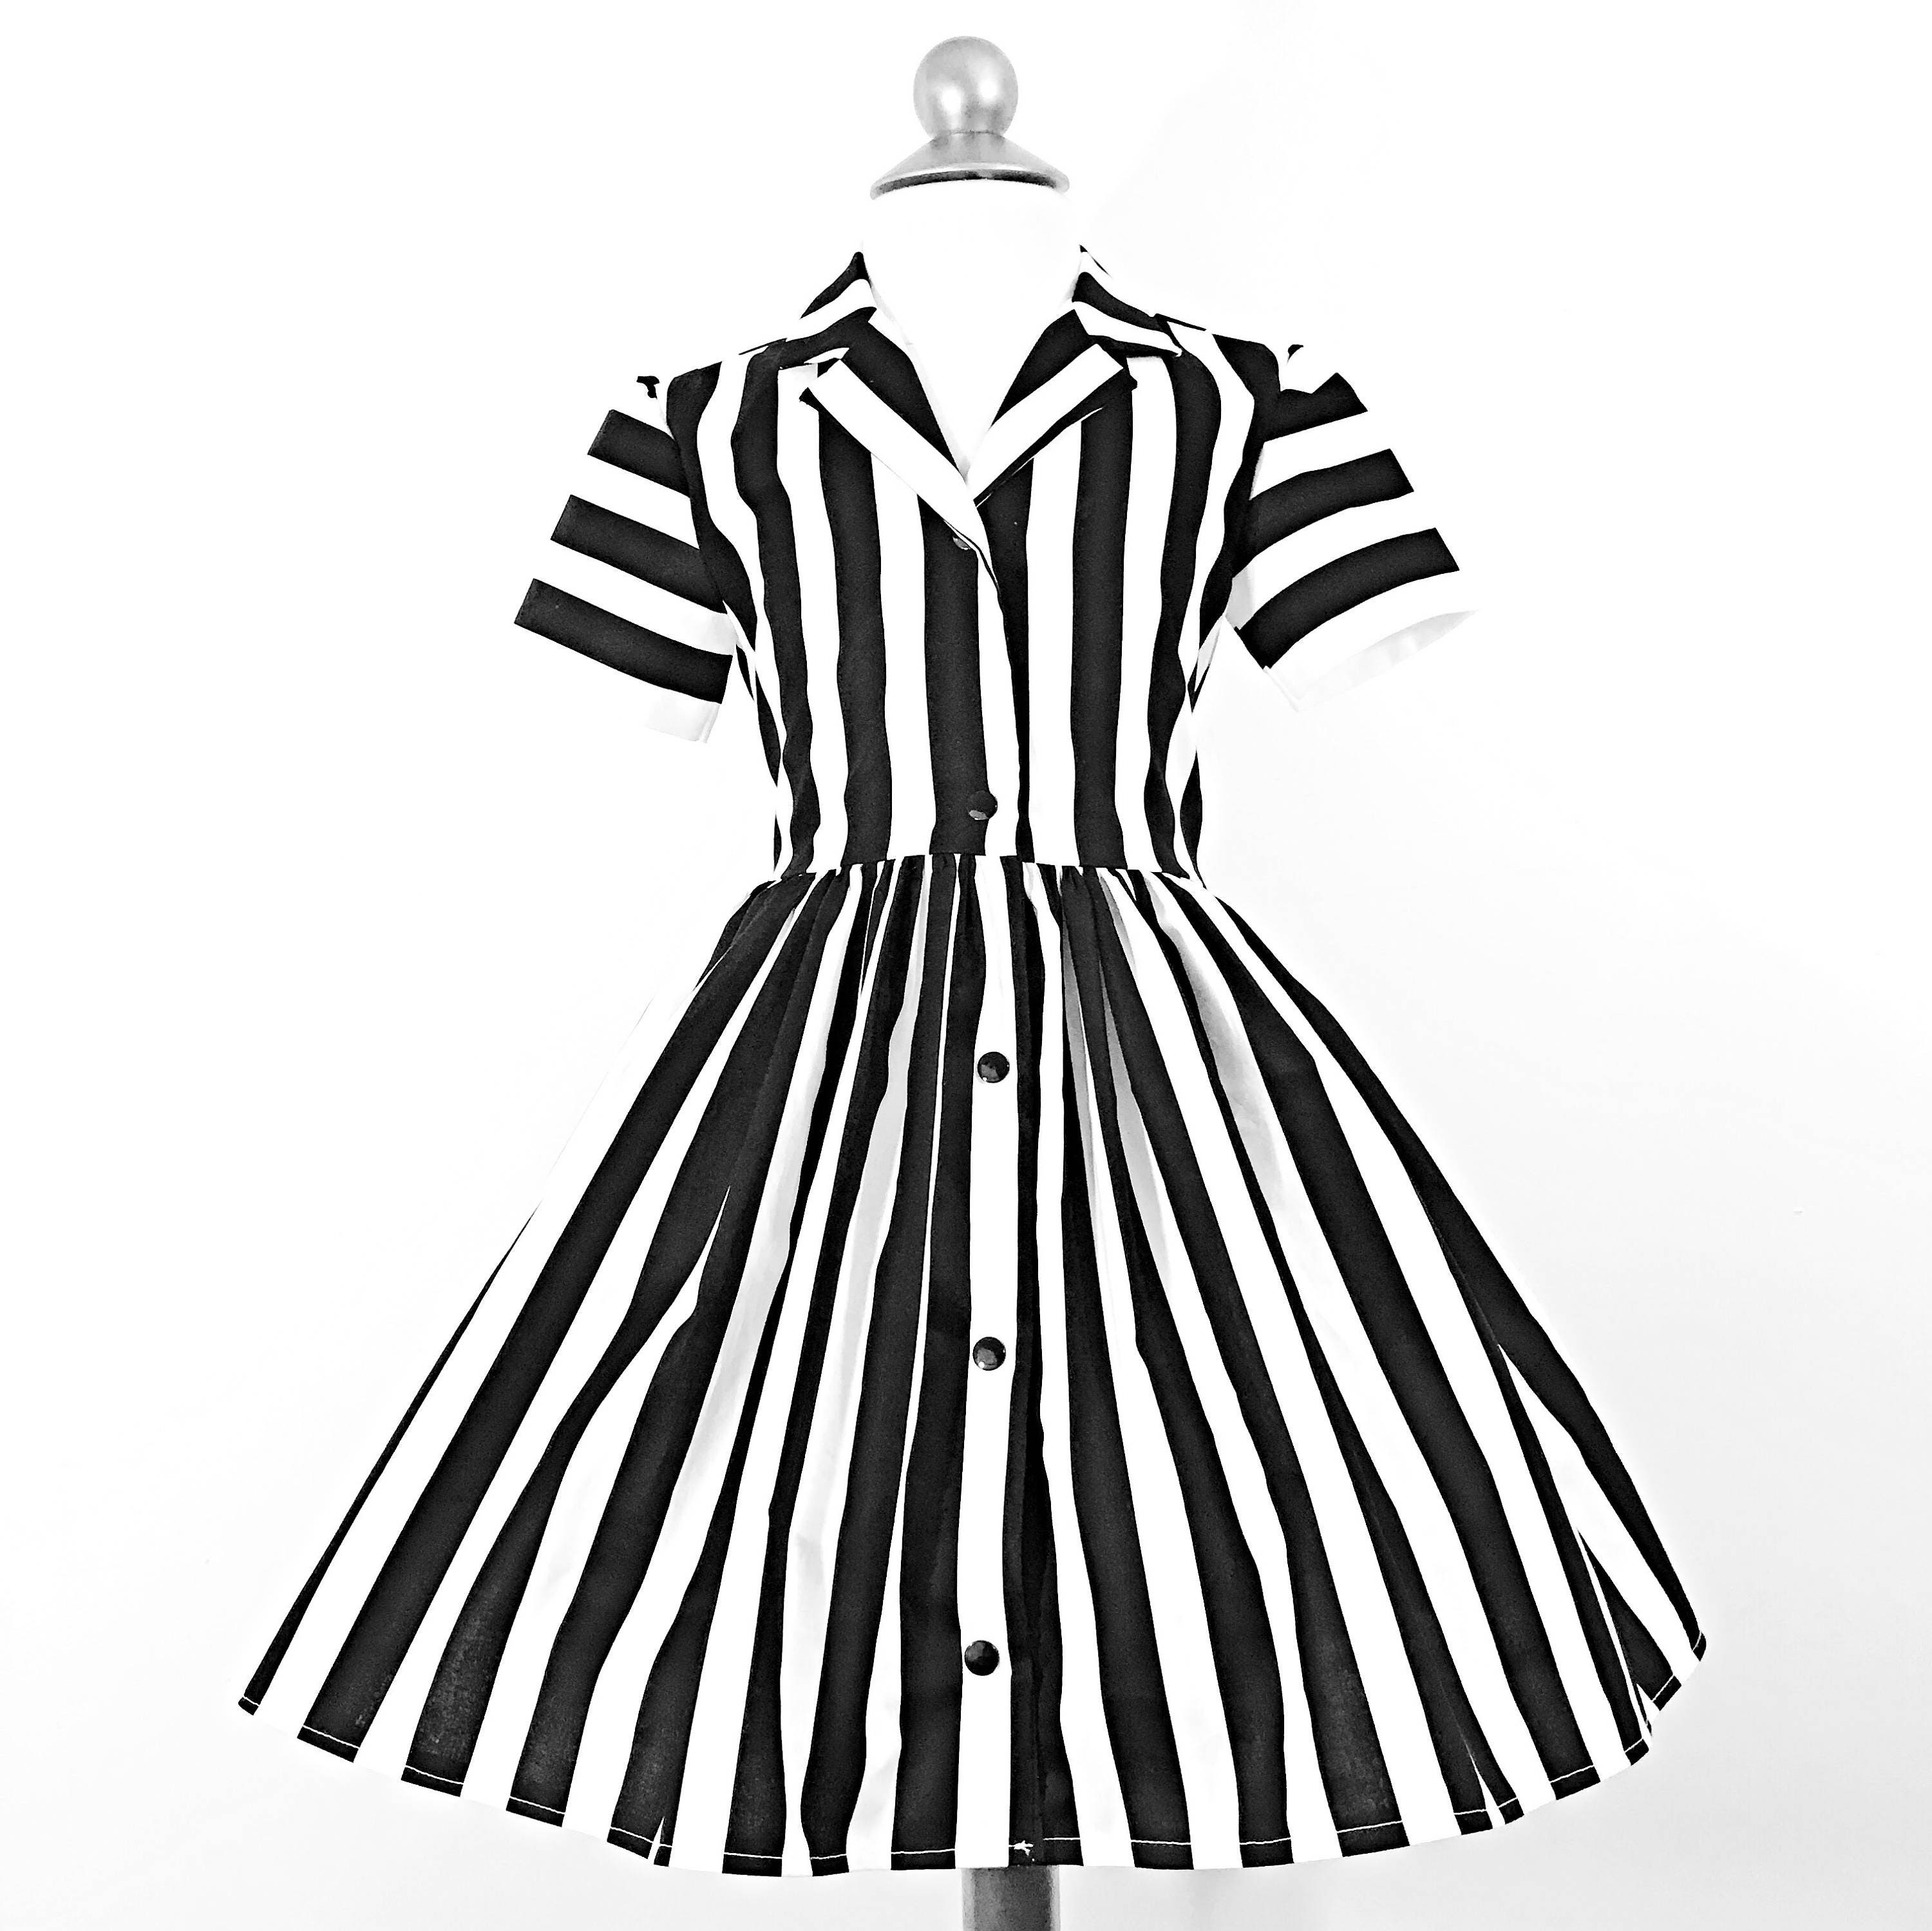 Striped Gothabilly Dress